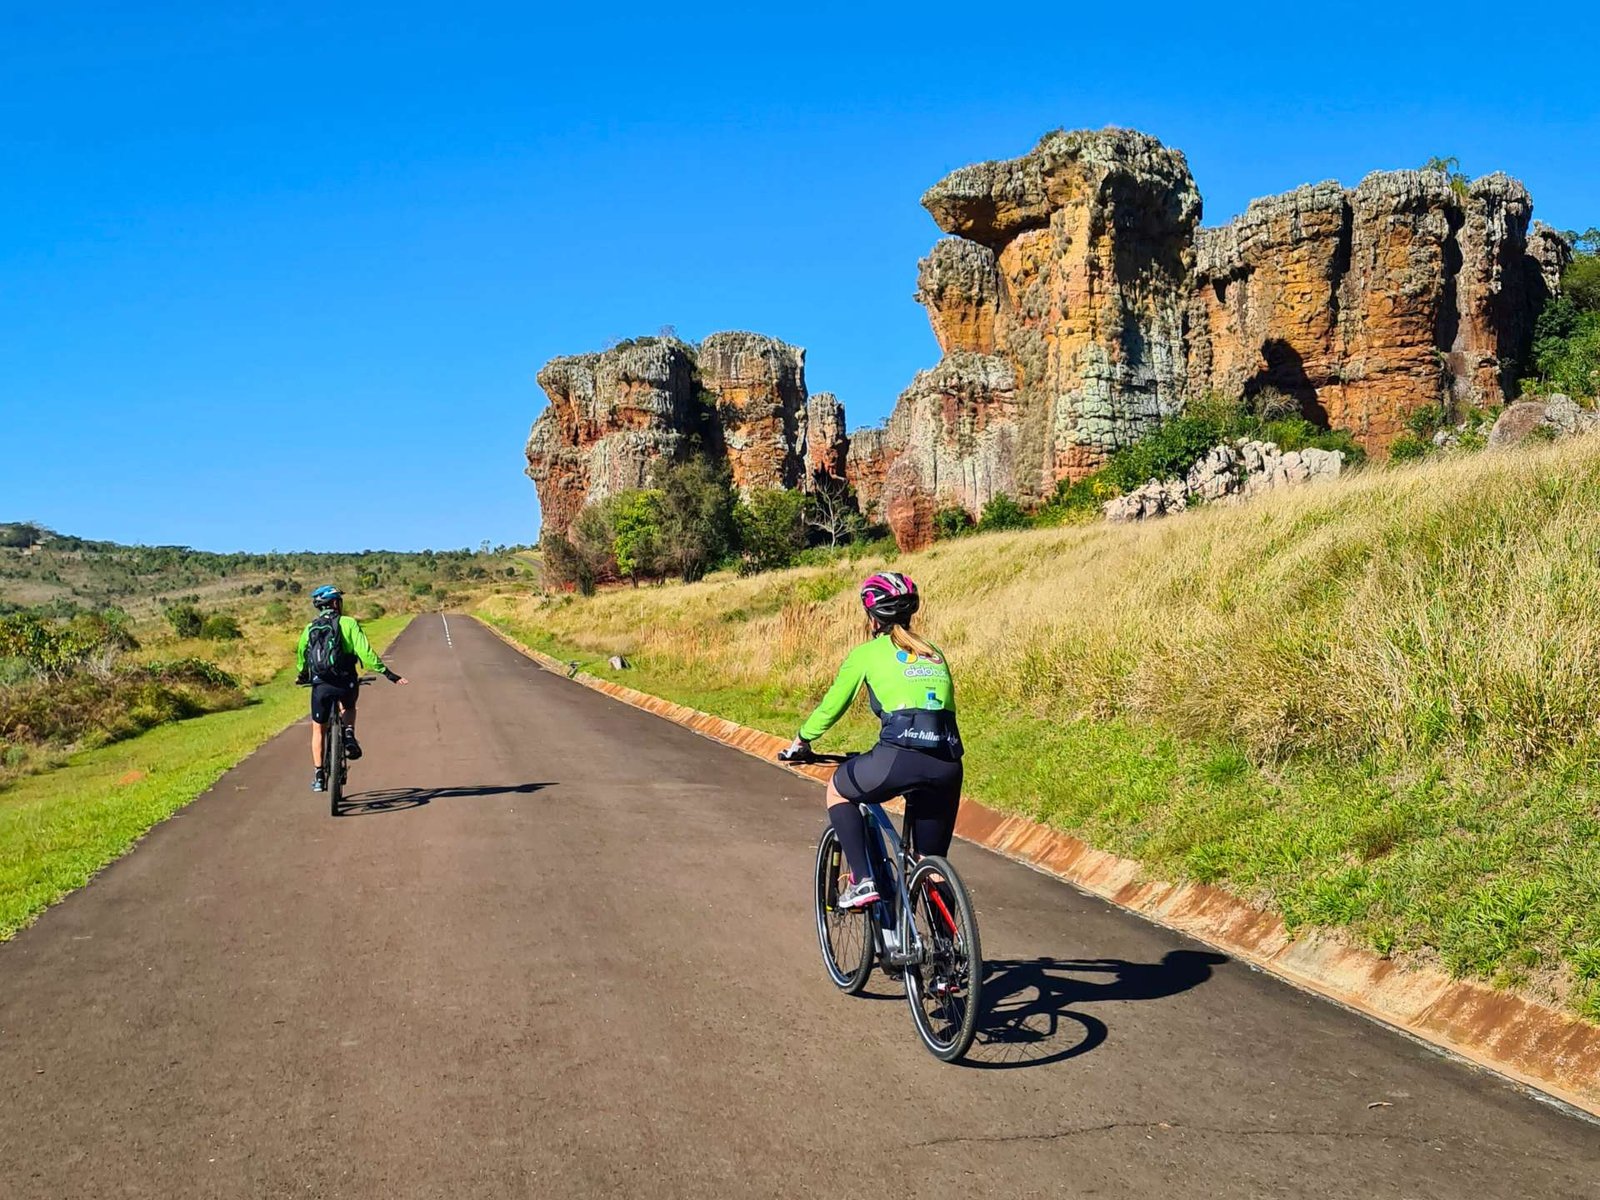 Casal de ciclistas desfruta do cicloturismo autoguiado em paisagem de unidade de conservação